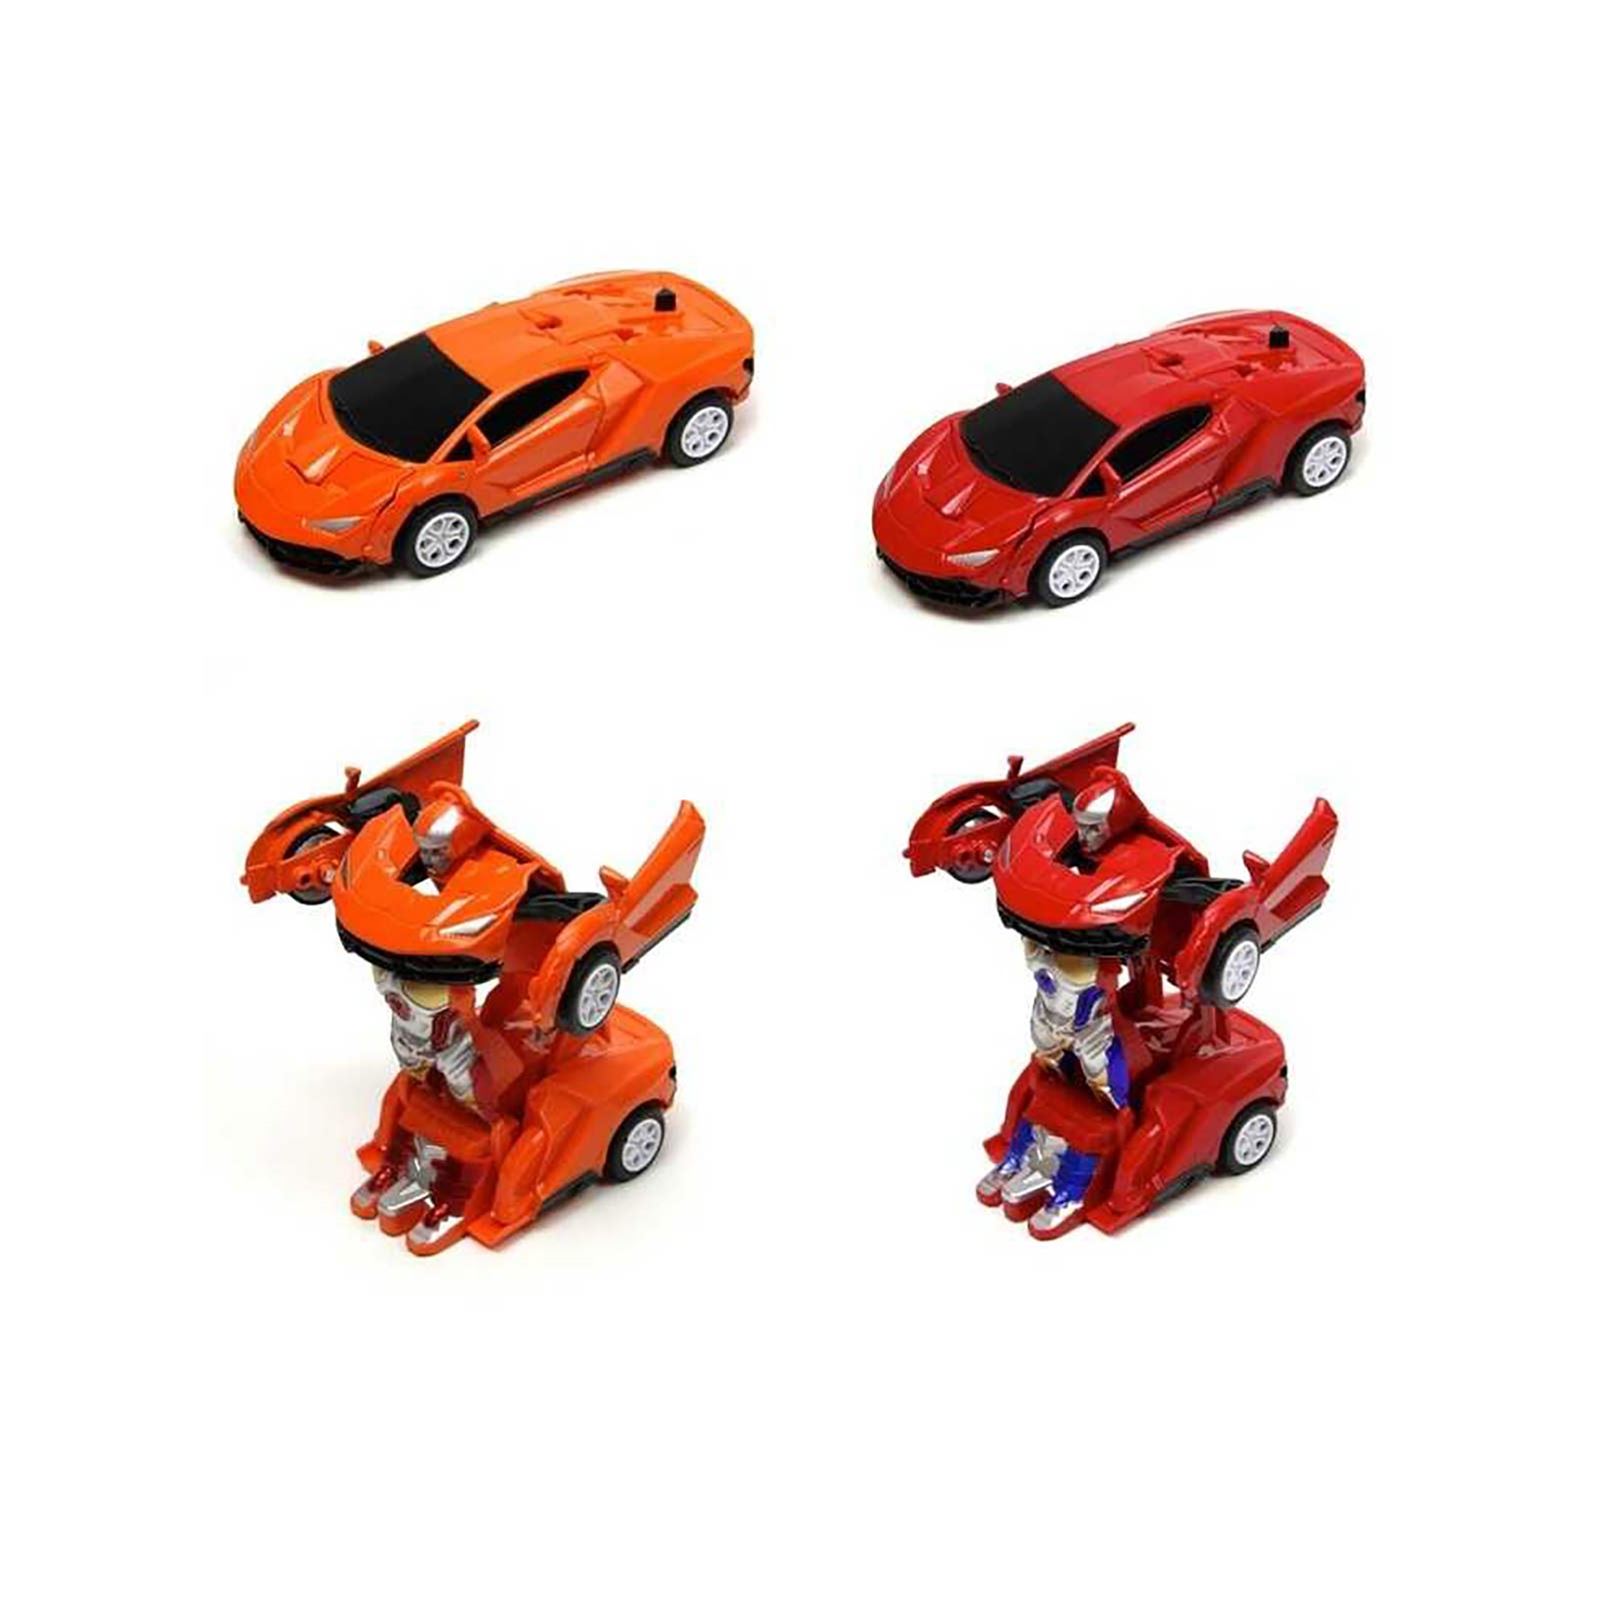 Vardem Tek Tuşla Robota Dönüşen Metal Çekbırak Lamborghini Araba 1:32 Kırmızı